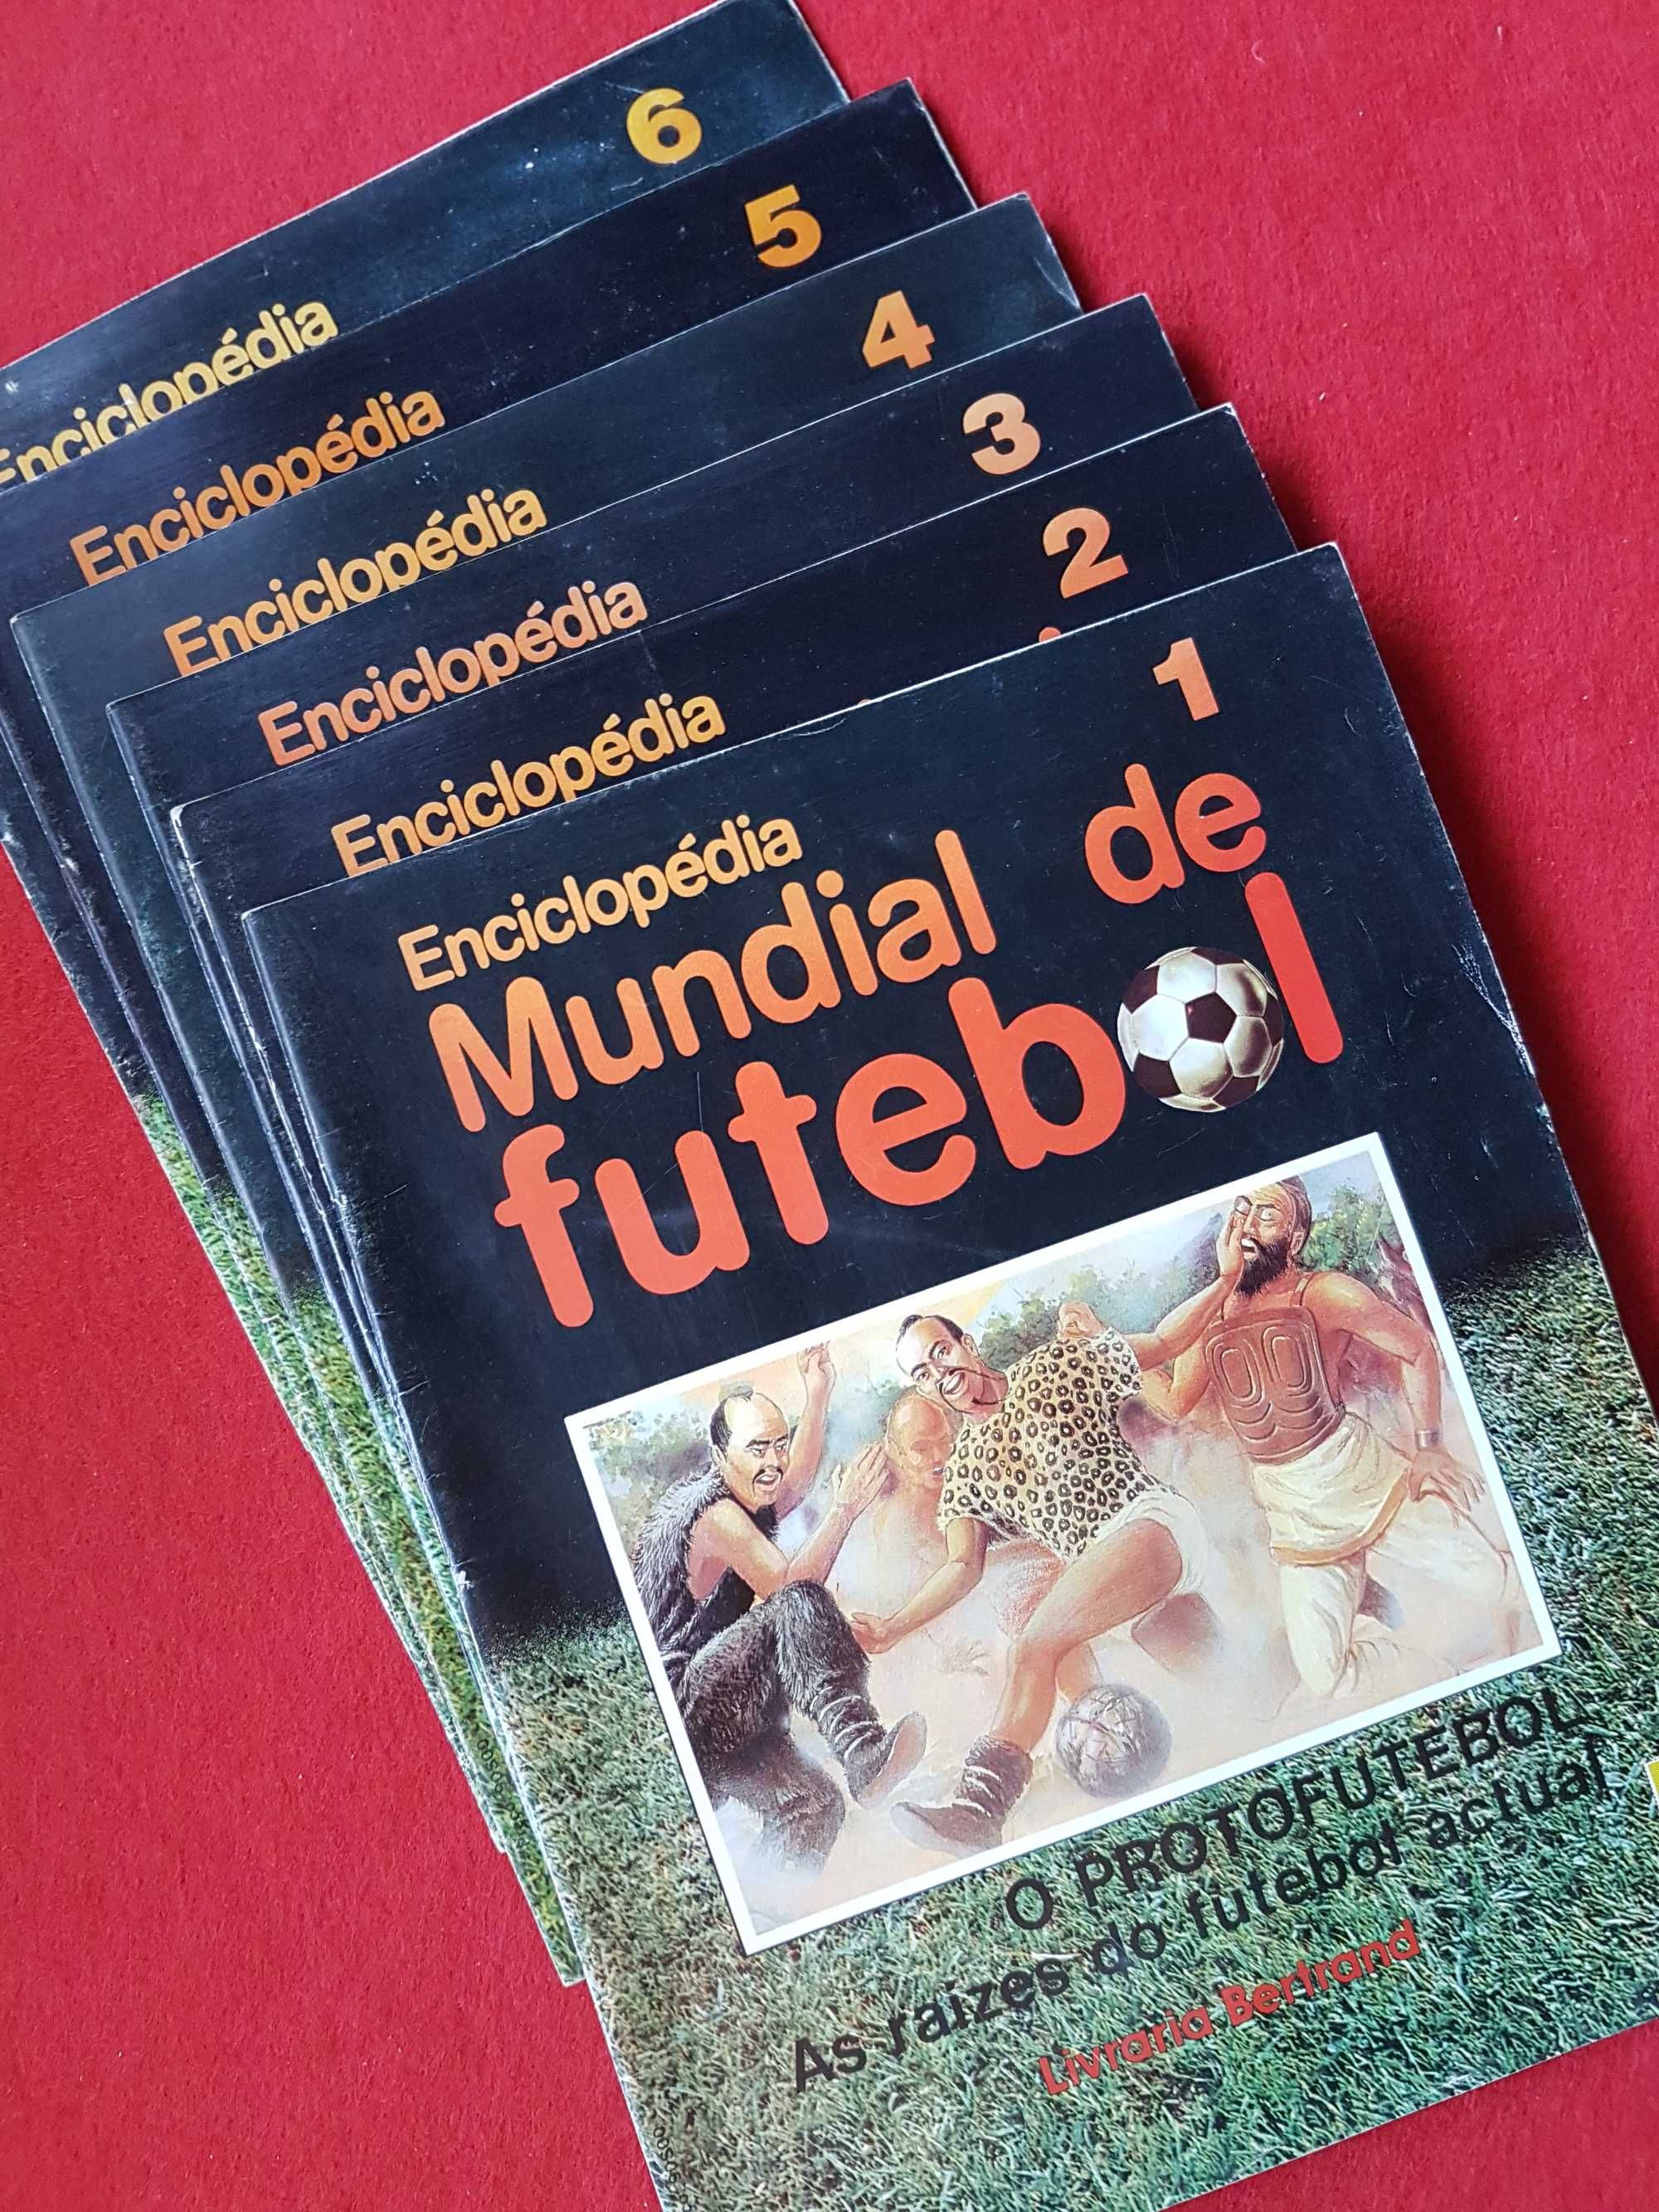 Enciclopedia Mundial de Futebol  (Livraria Bertrand )